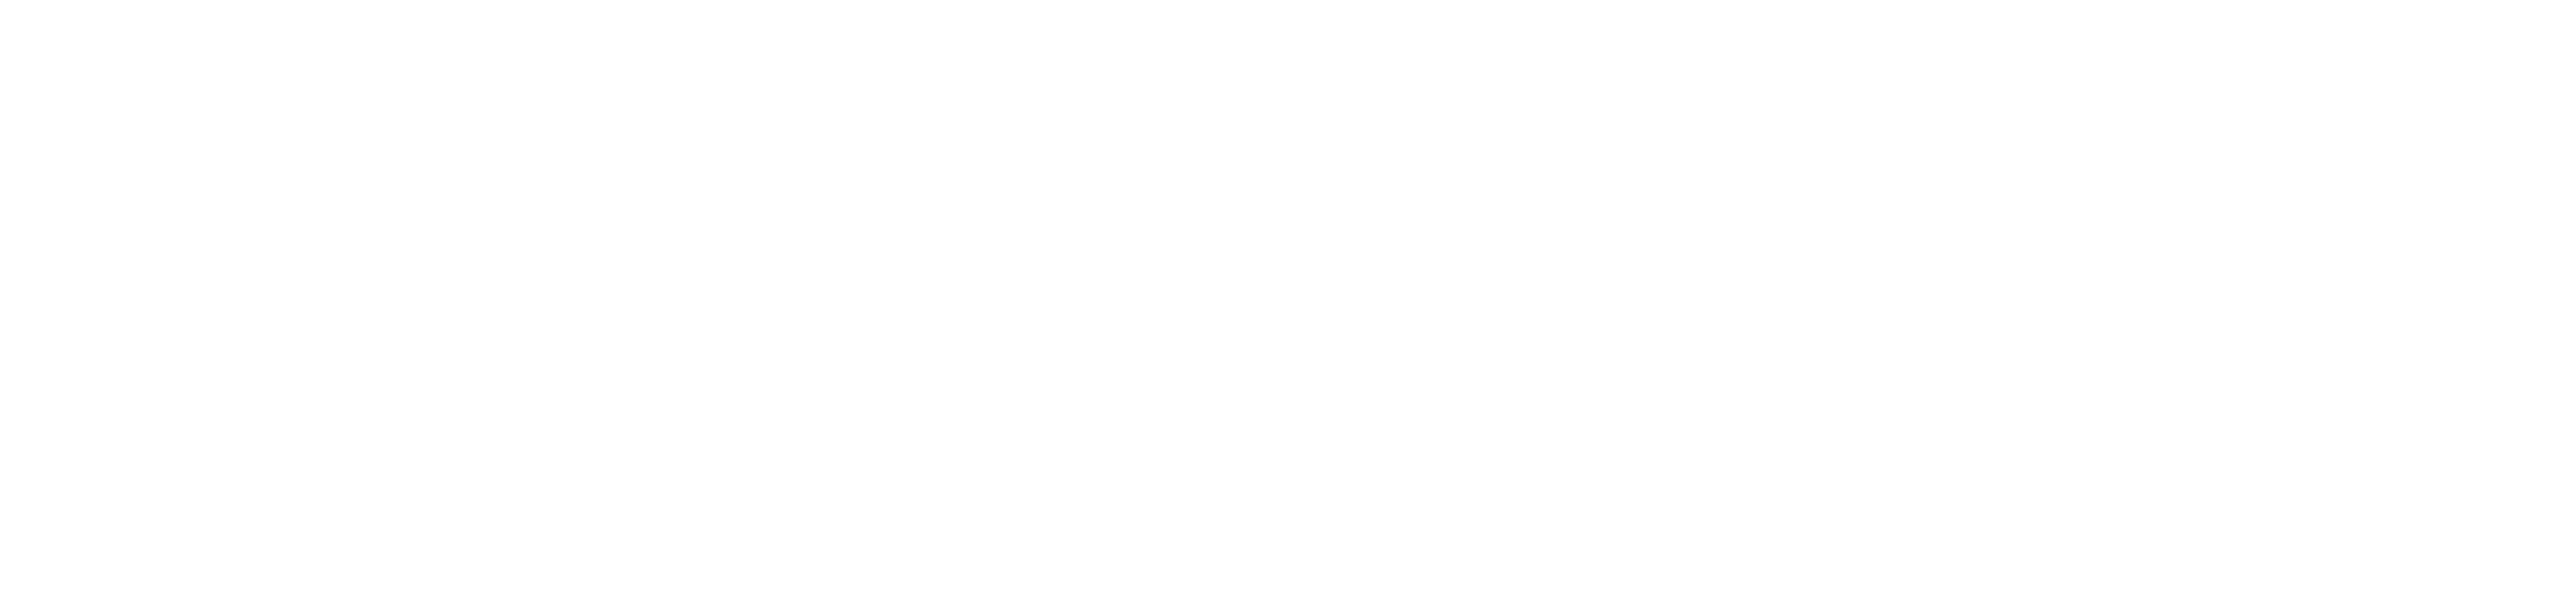 David W. Allison, MD Logo